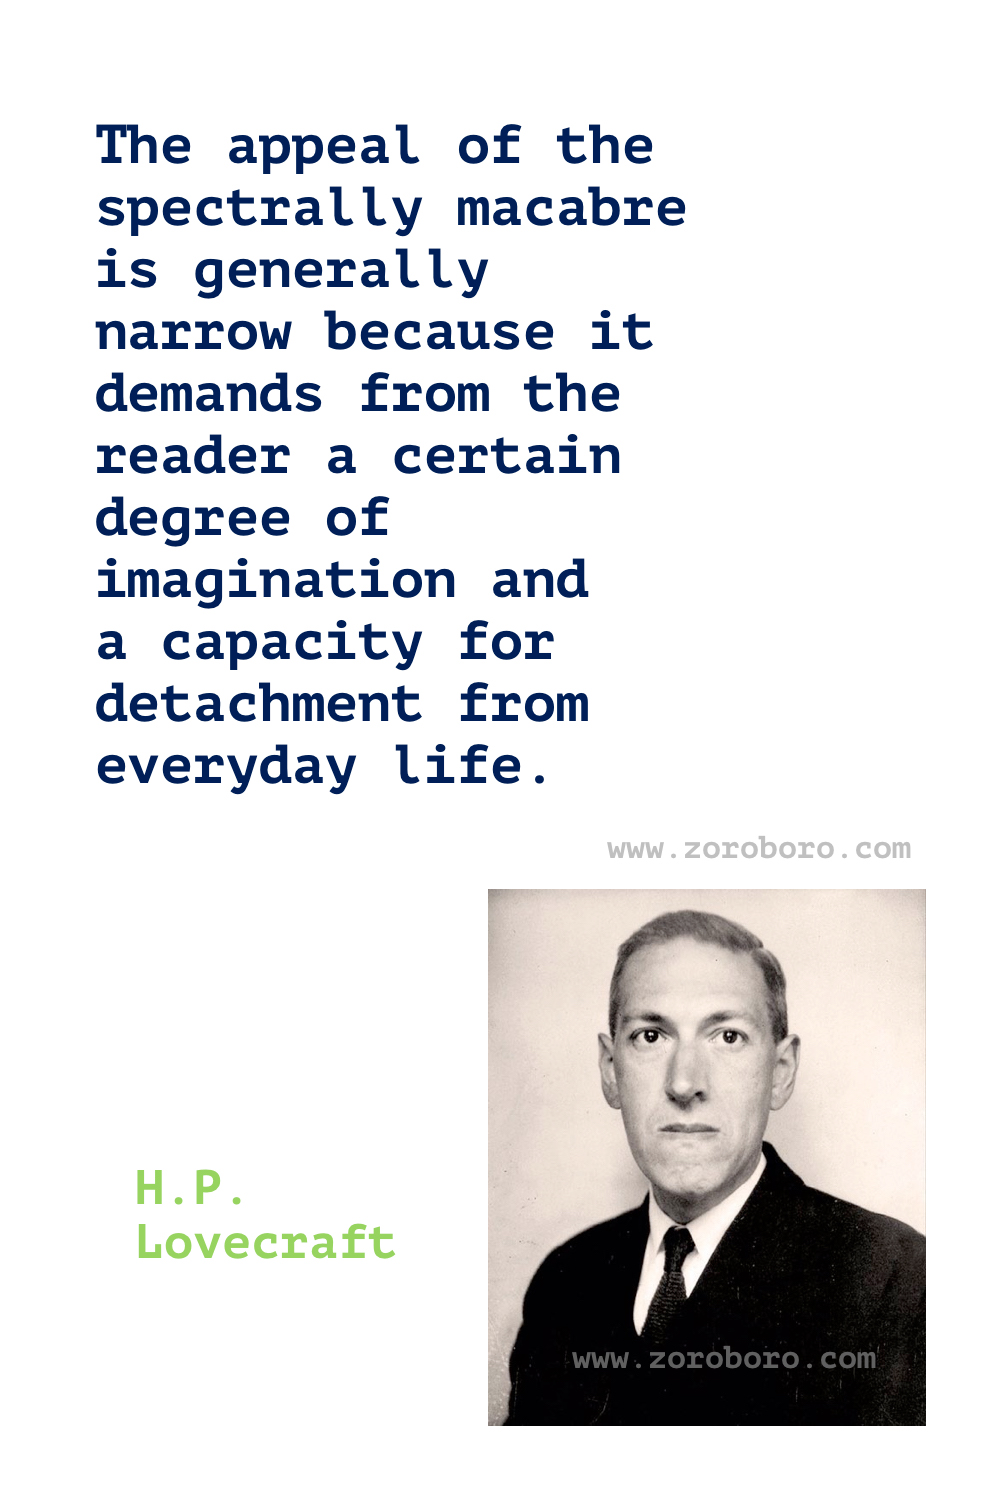 H. P. Lovecraft Quotes, H. P. Lovecraft Books Quotes, H. P. Lovecraft The Call of Cthulhu Quotes, H. P. Lovecraft Cat, Life & Madness Quotes, H. P. Lovecraft Quotes.